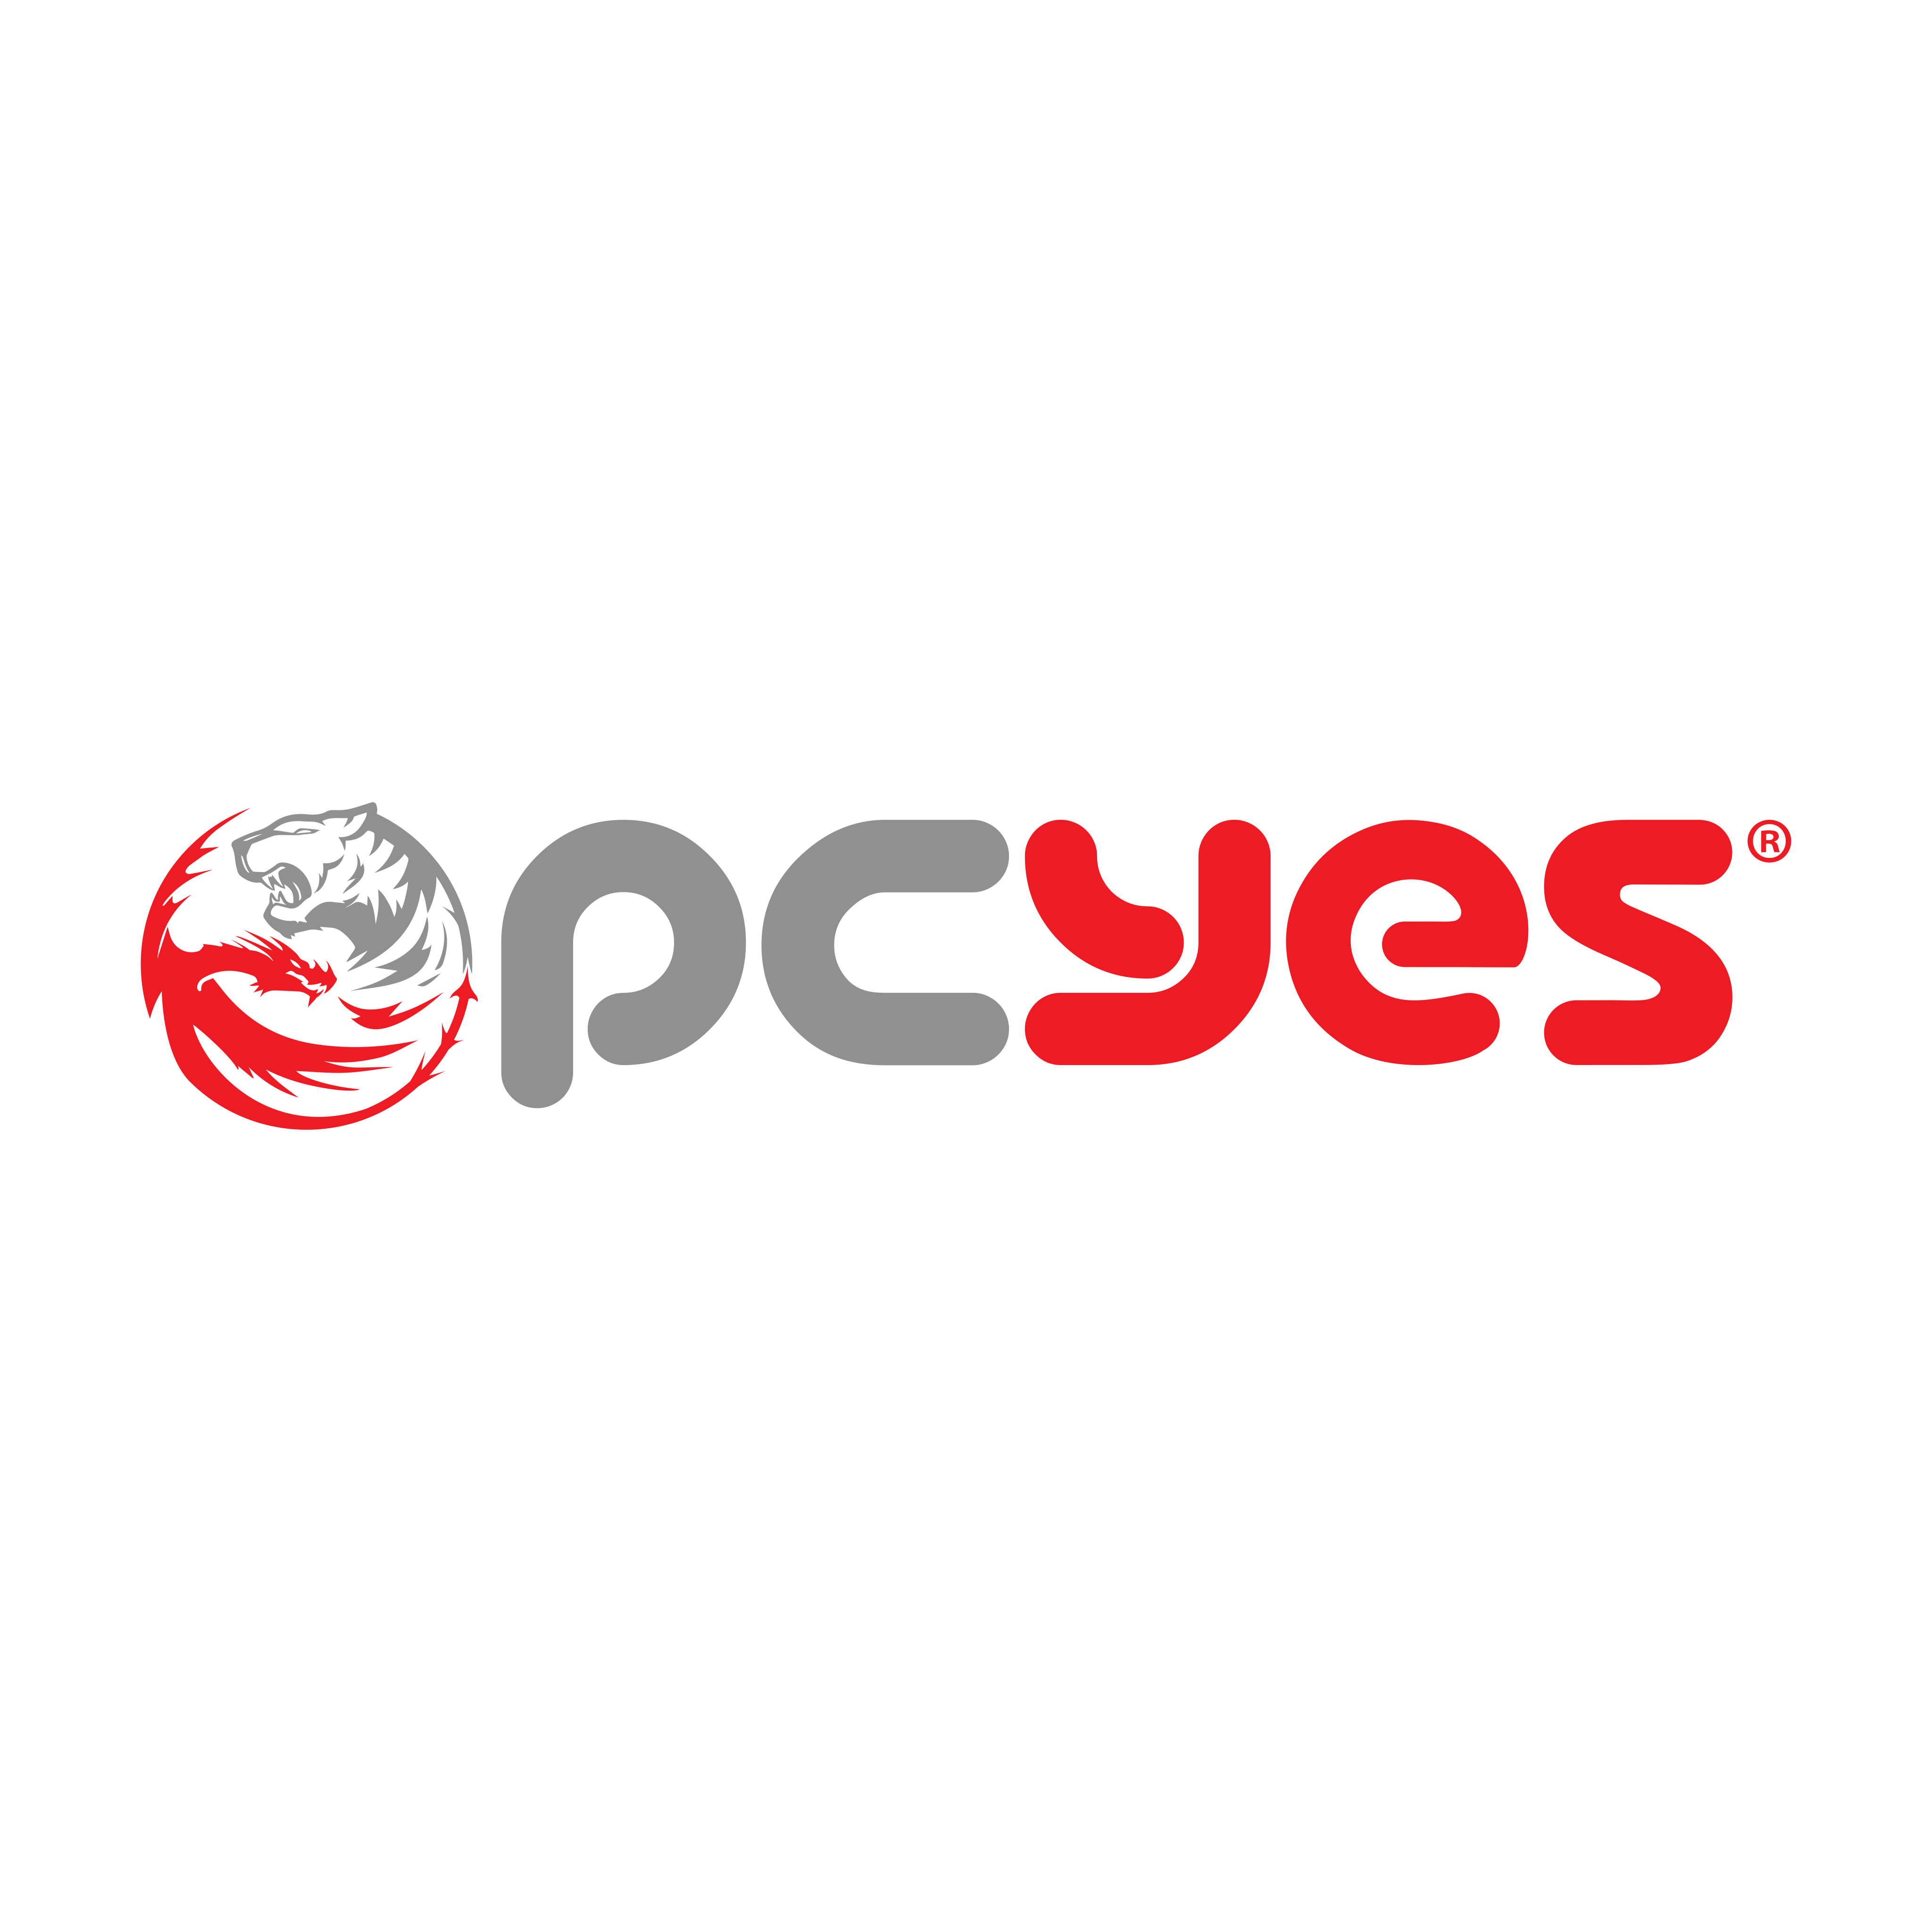 pcyes-logo